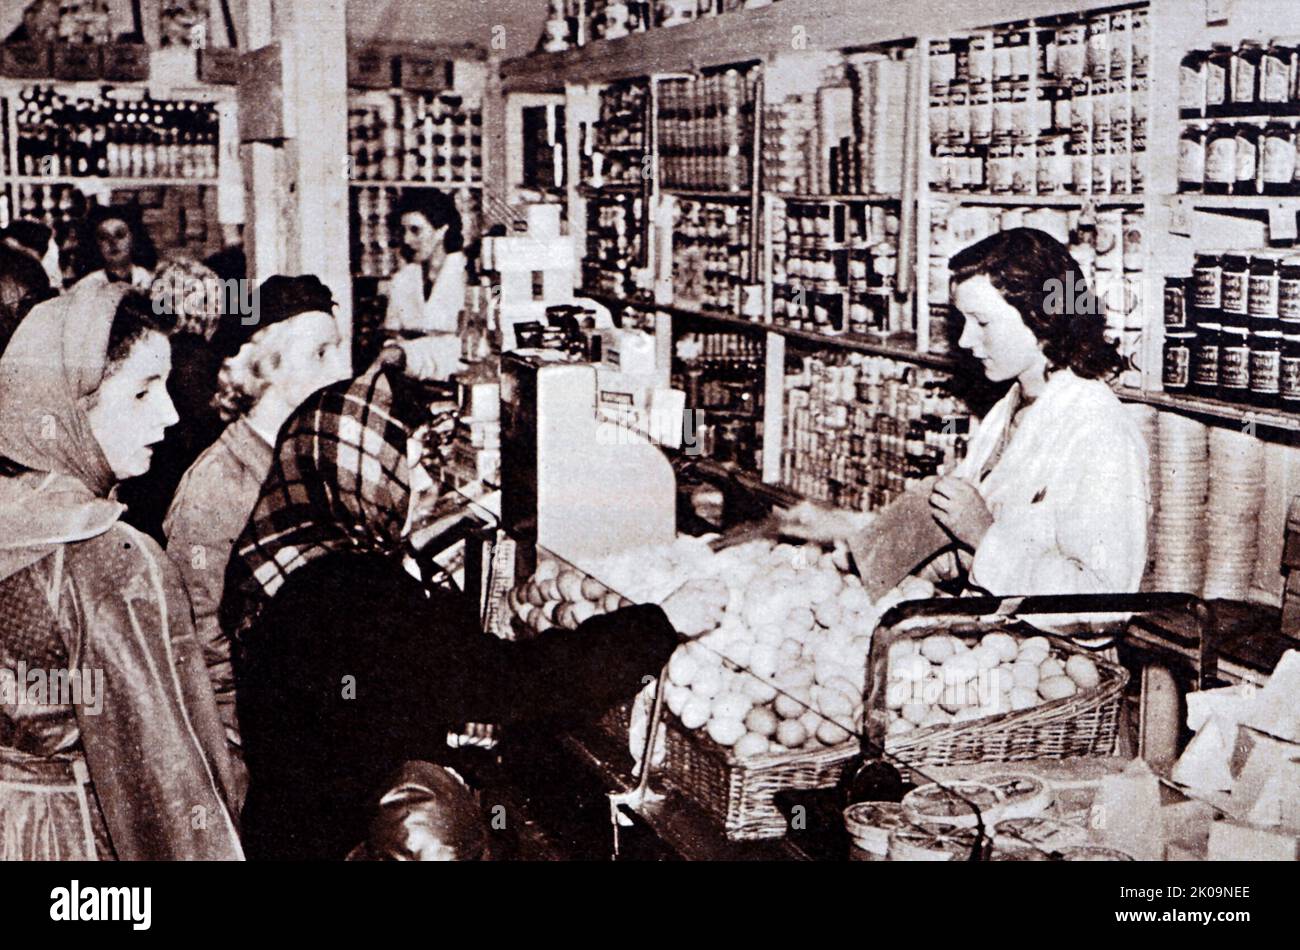 Les acheteurs achetant des œufs dans un magasin en Angleterre pendant la Seconde Guerre mondiale Banque D'Images